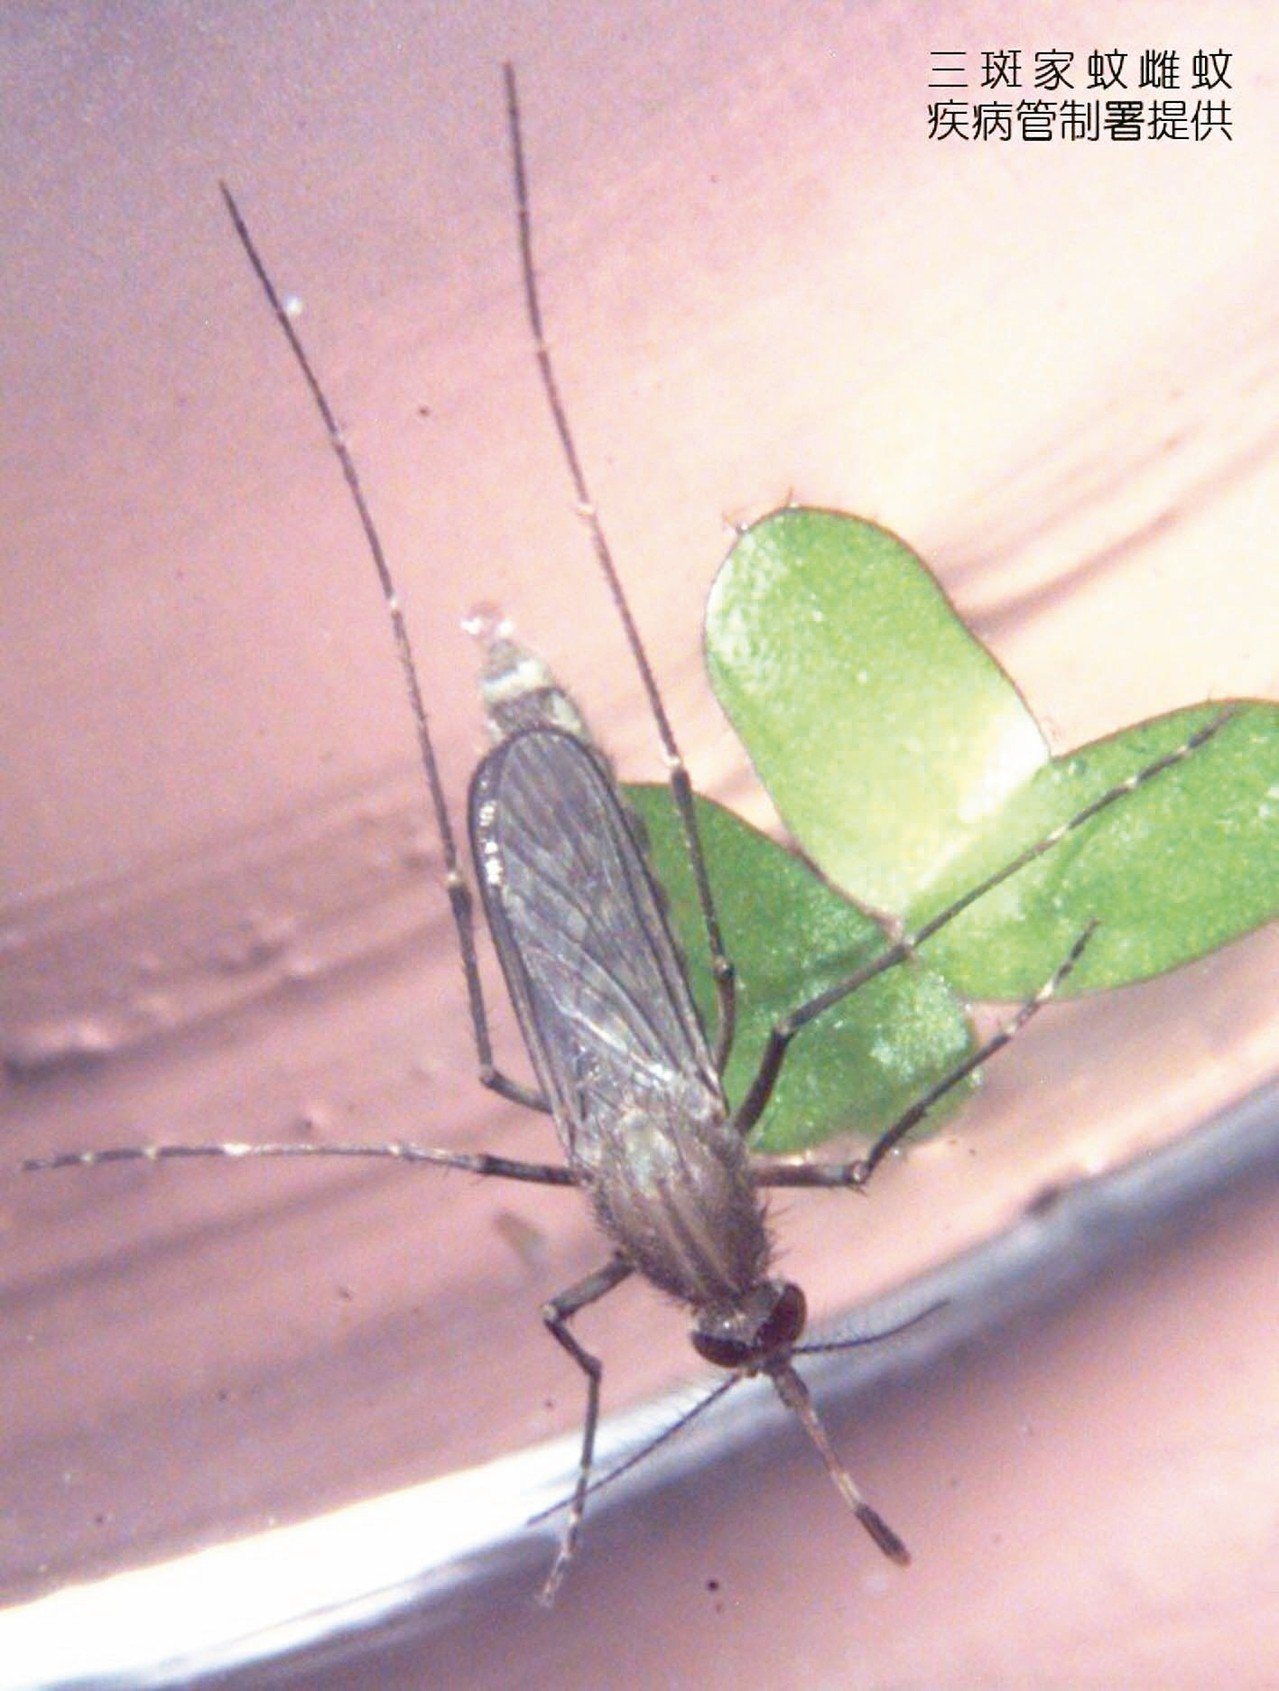 三斑家蚊是傳染日本腦炎的病媒蚊之一，民眾應避免在黎明和黃昏時，在豬舍、動物畜舍或病媒蚊孳生地點附近活動，並做好防蚊措施。 圖／疾管署提供